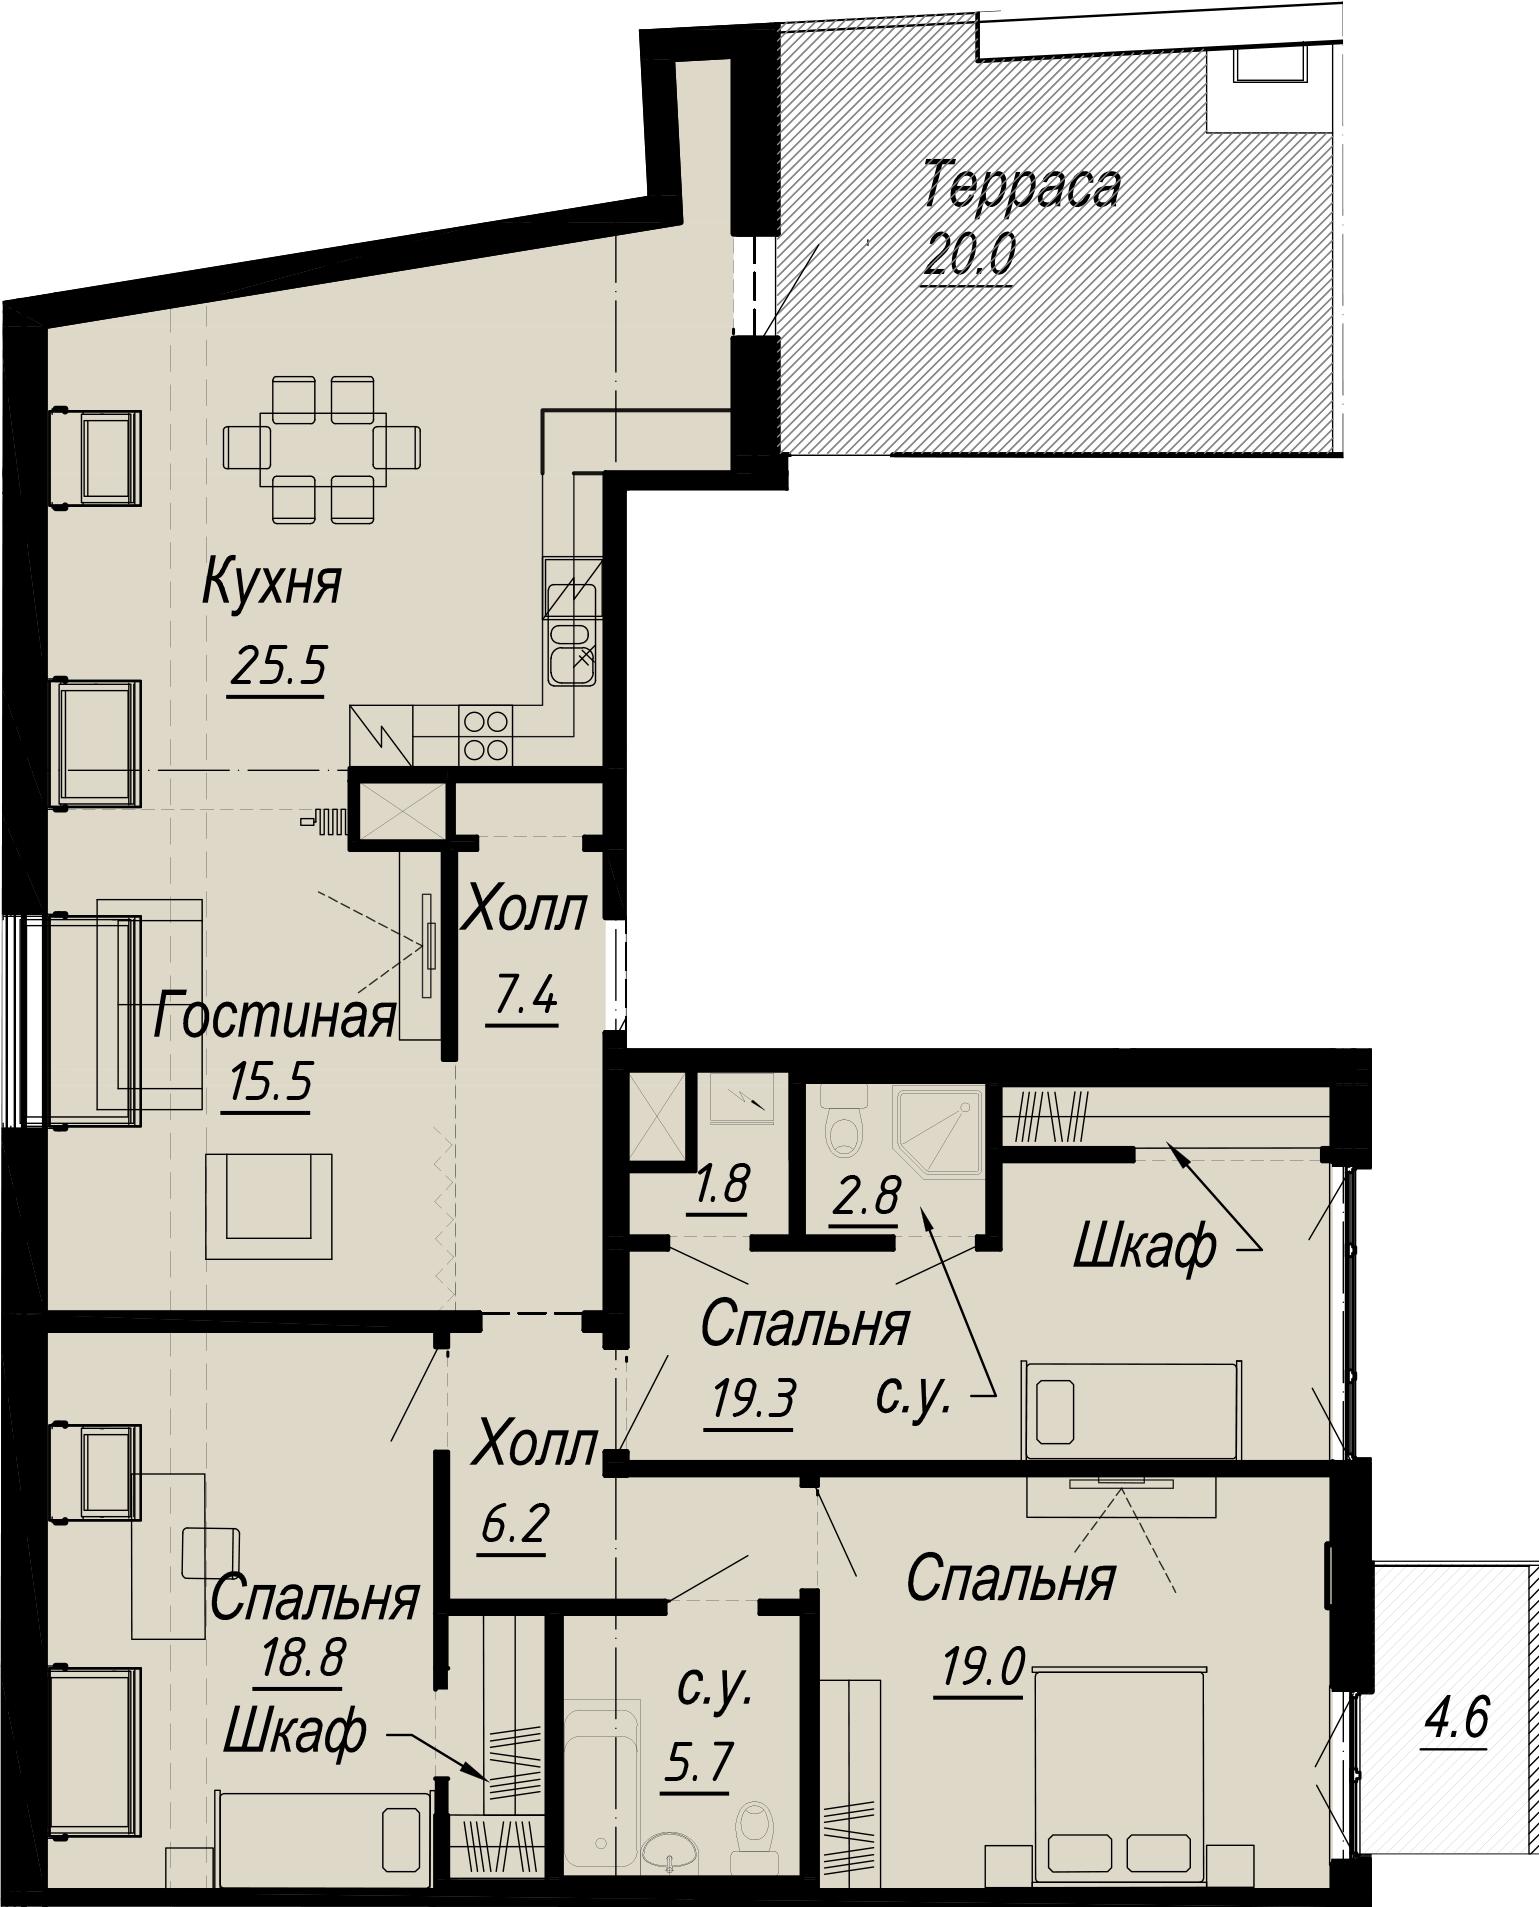 3-комнатная квартира  №8-8 в Meltzer Hall: 125.43 м², этаж 8 - купить в Санкт-Петербурге